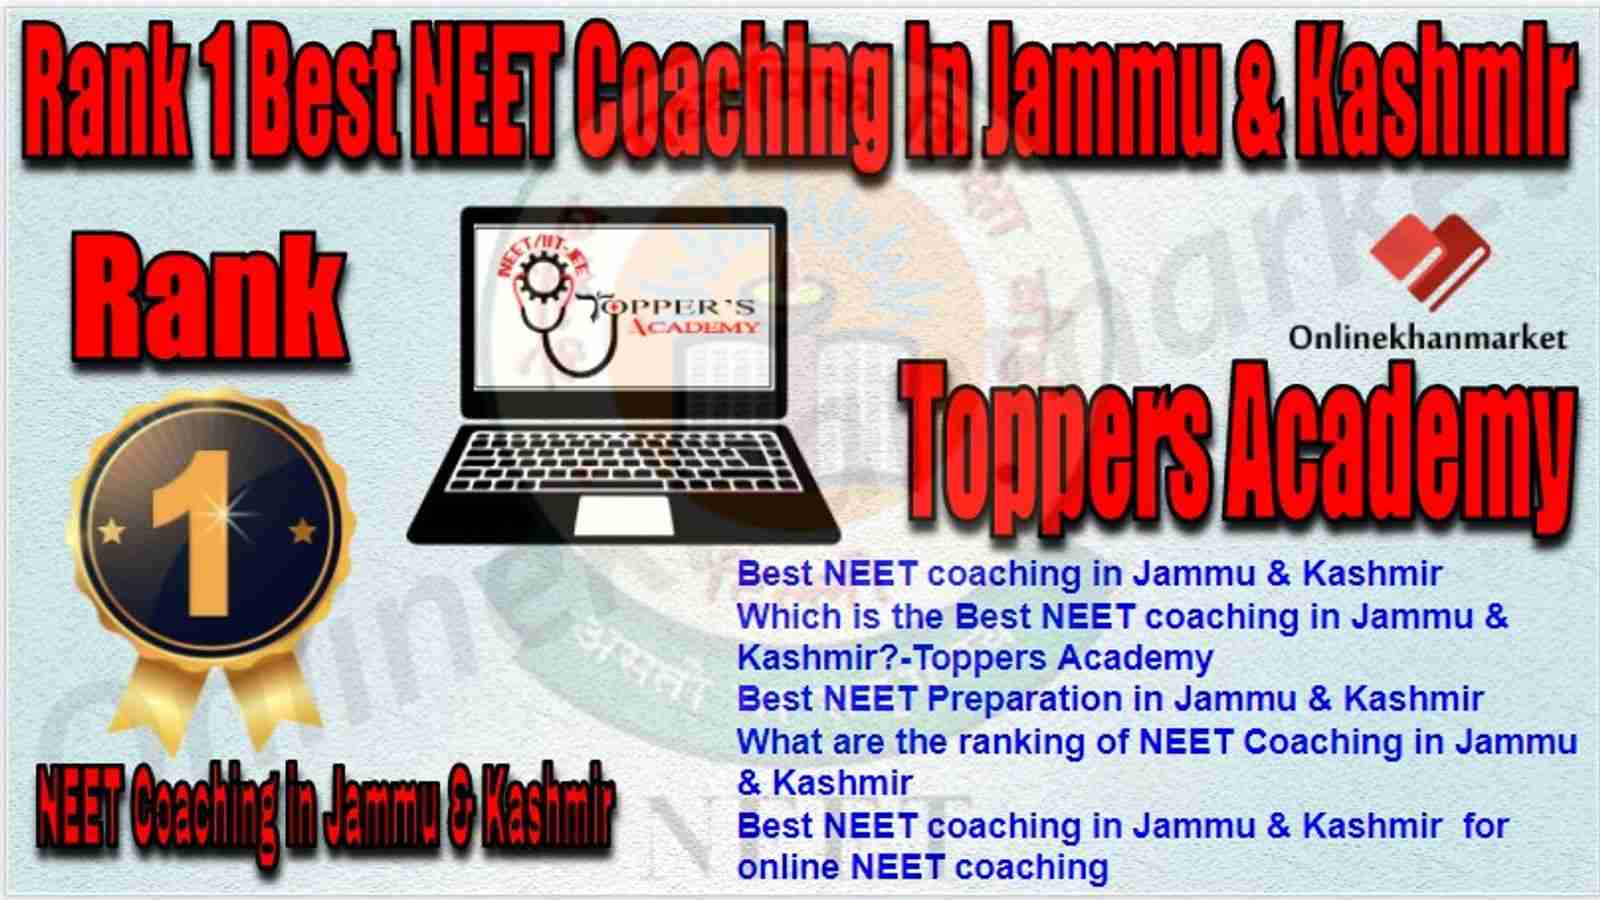 Rank 1 Best NEET Coaching in jammu &kashmir